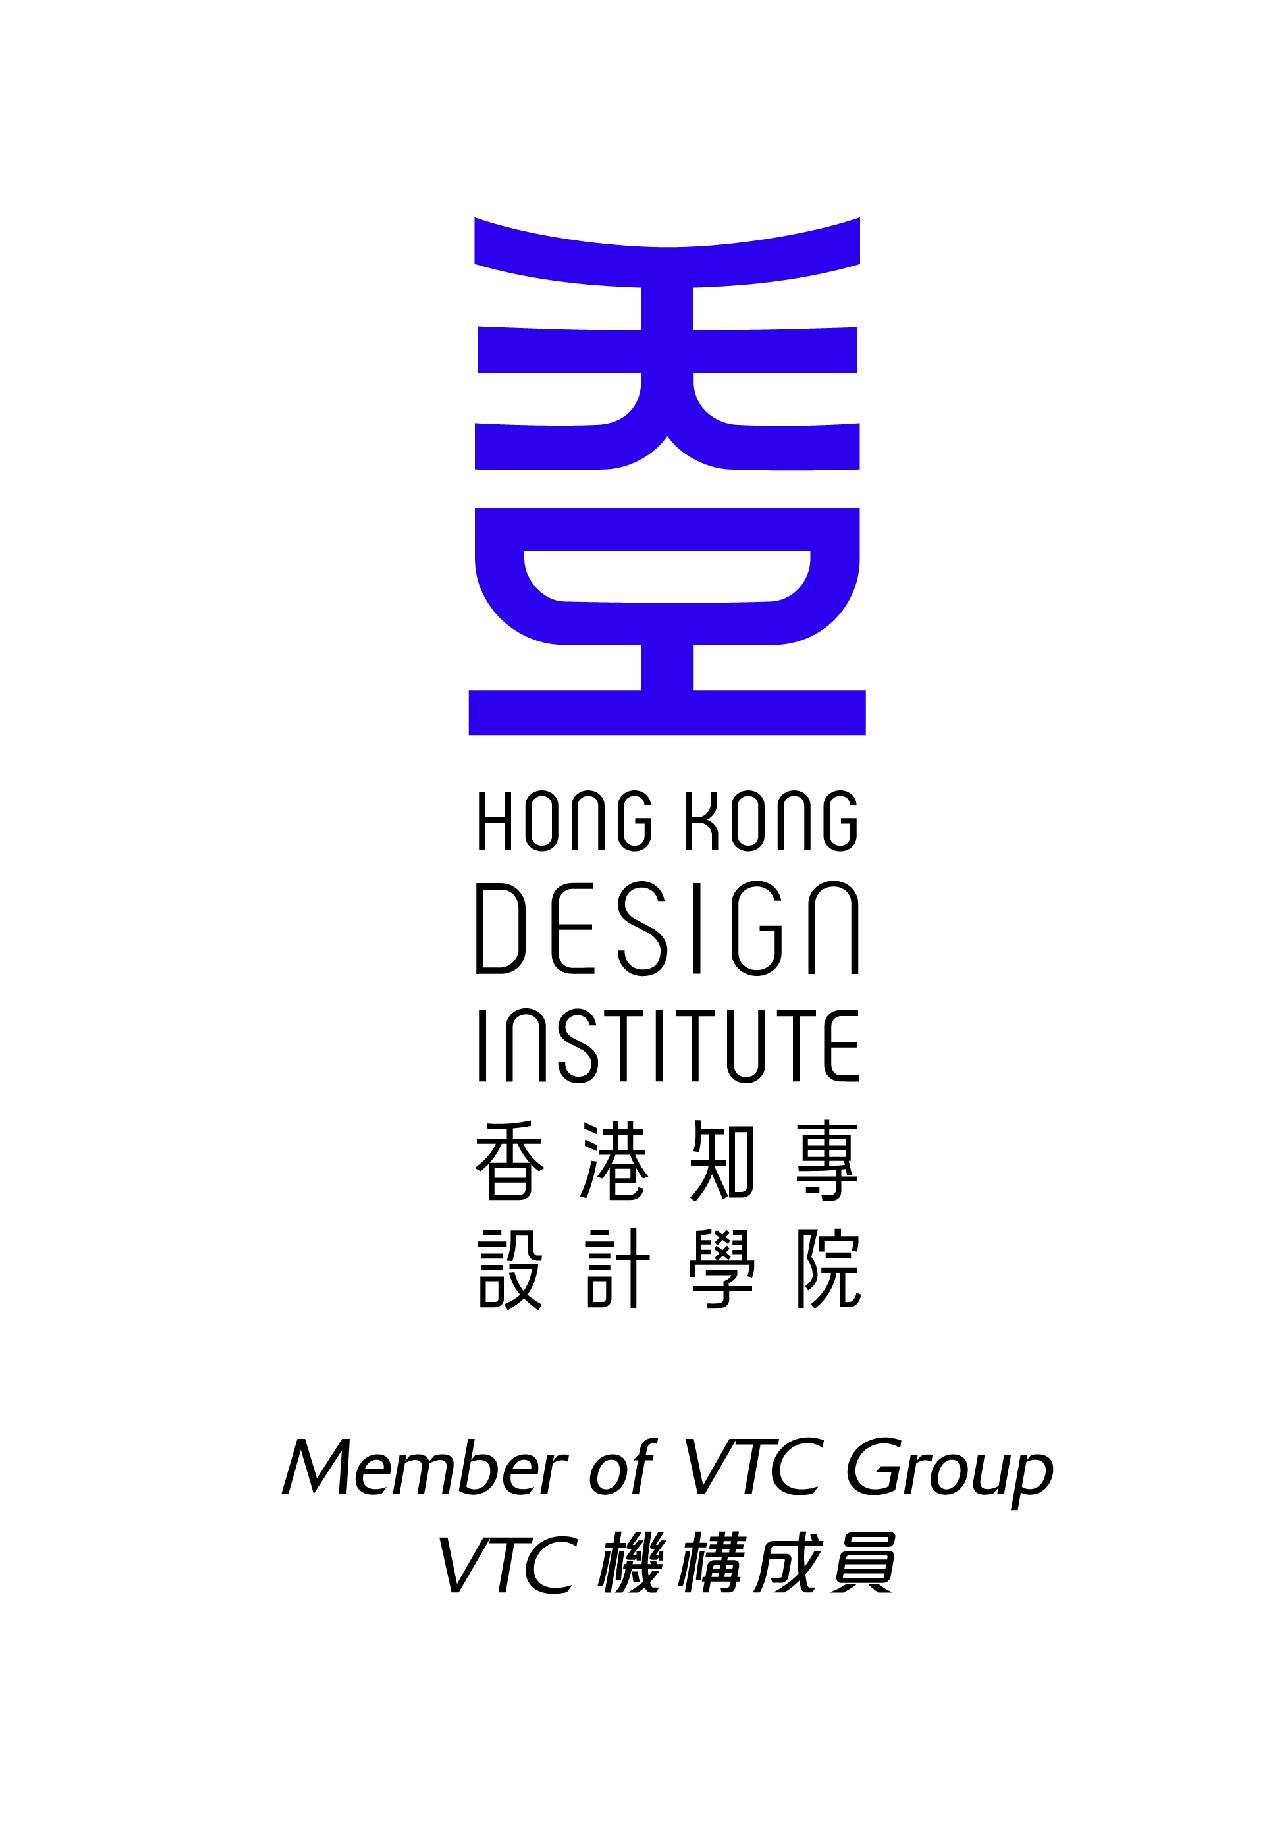 Hong Kong Design Institute (HKDI)